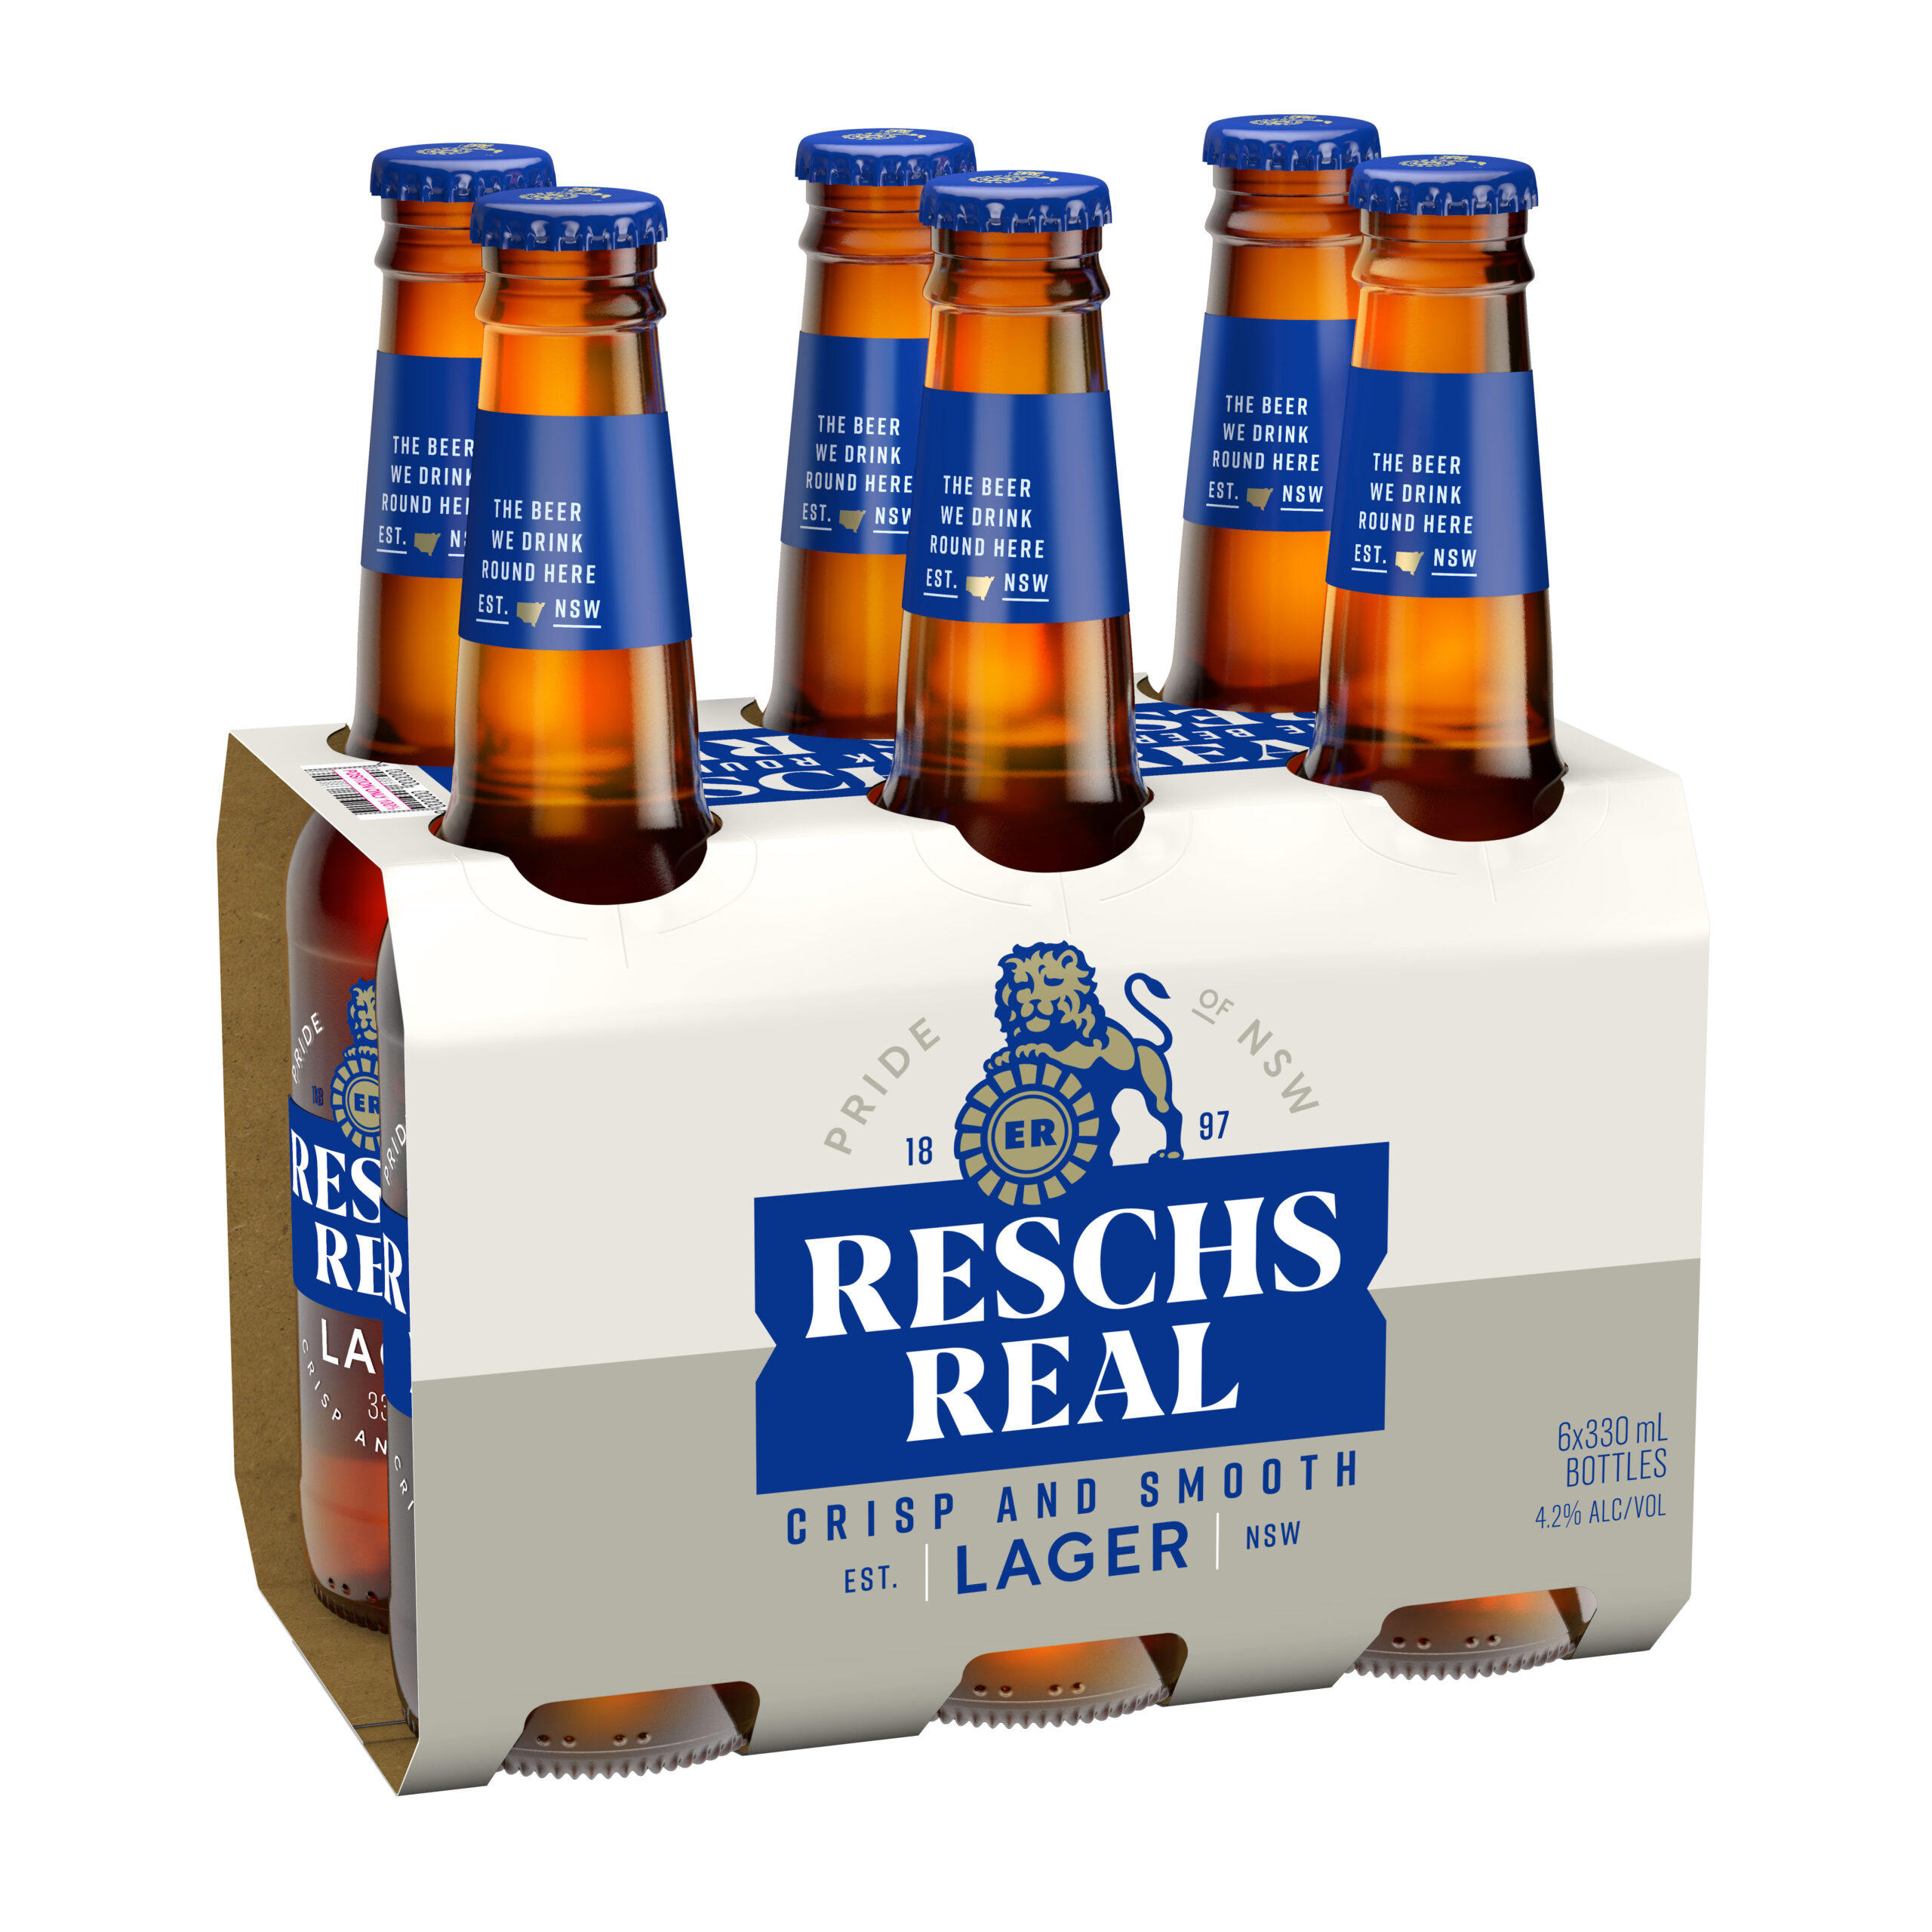 Reschs Real bottles